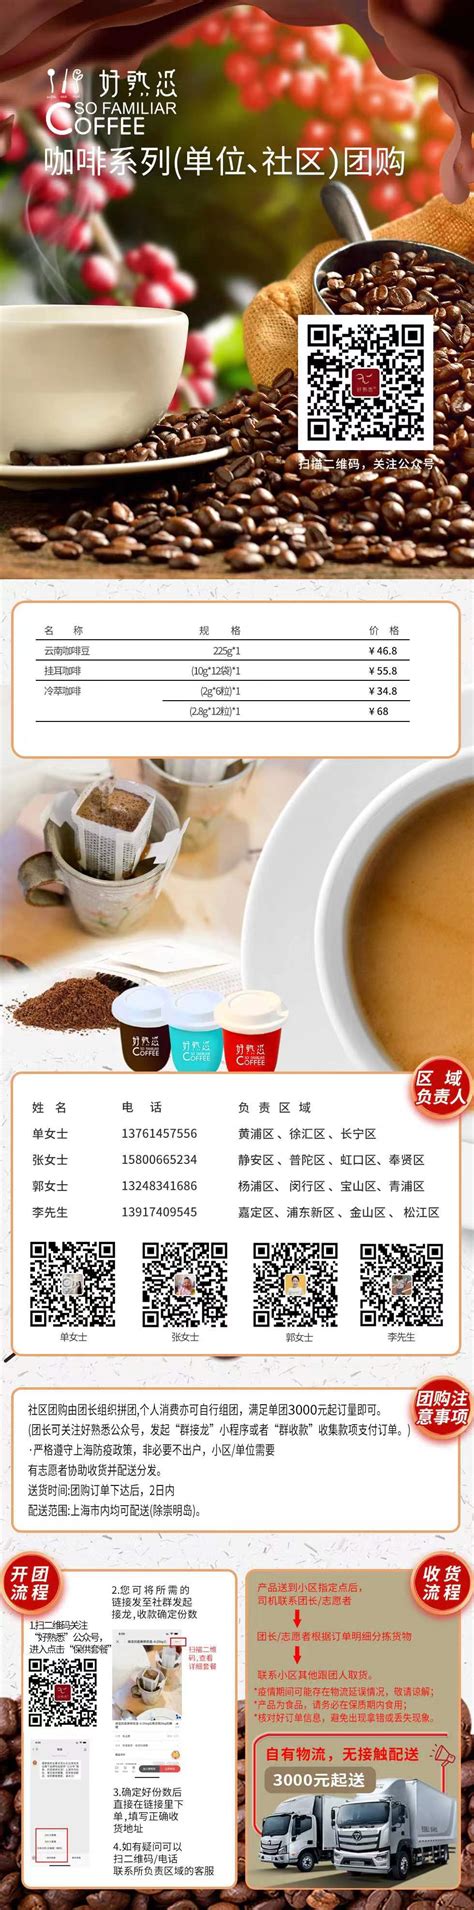 好熟悉发布上海团购信息，包括好熟悉云南咖啡豆、好熟悉挂耳咖啡、好熟悉冷萃咖啡等-FoodTalks